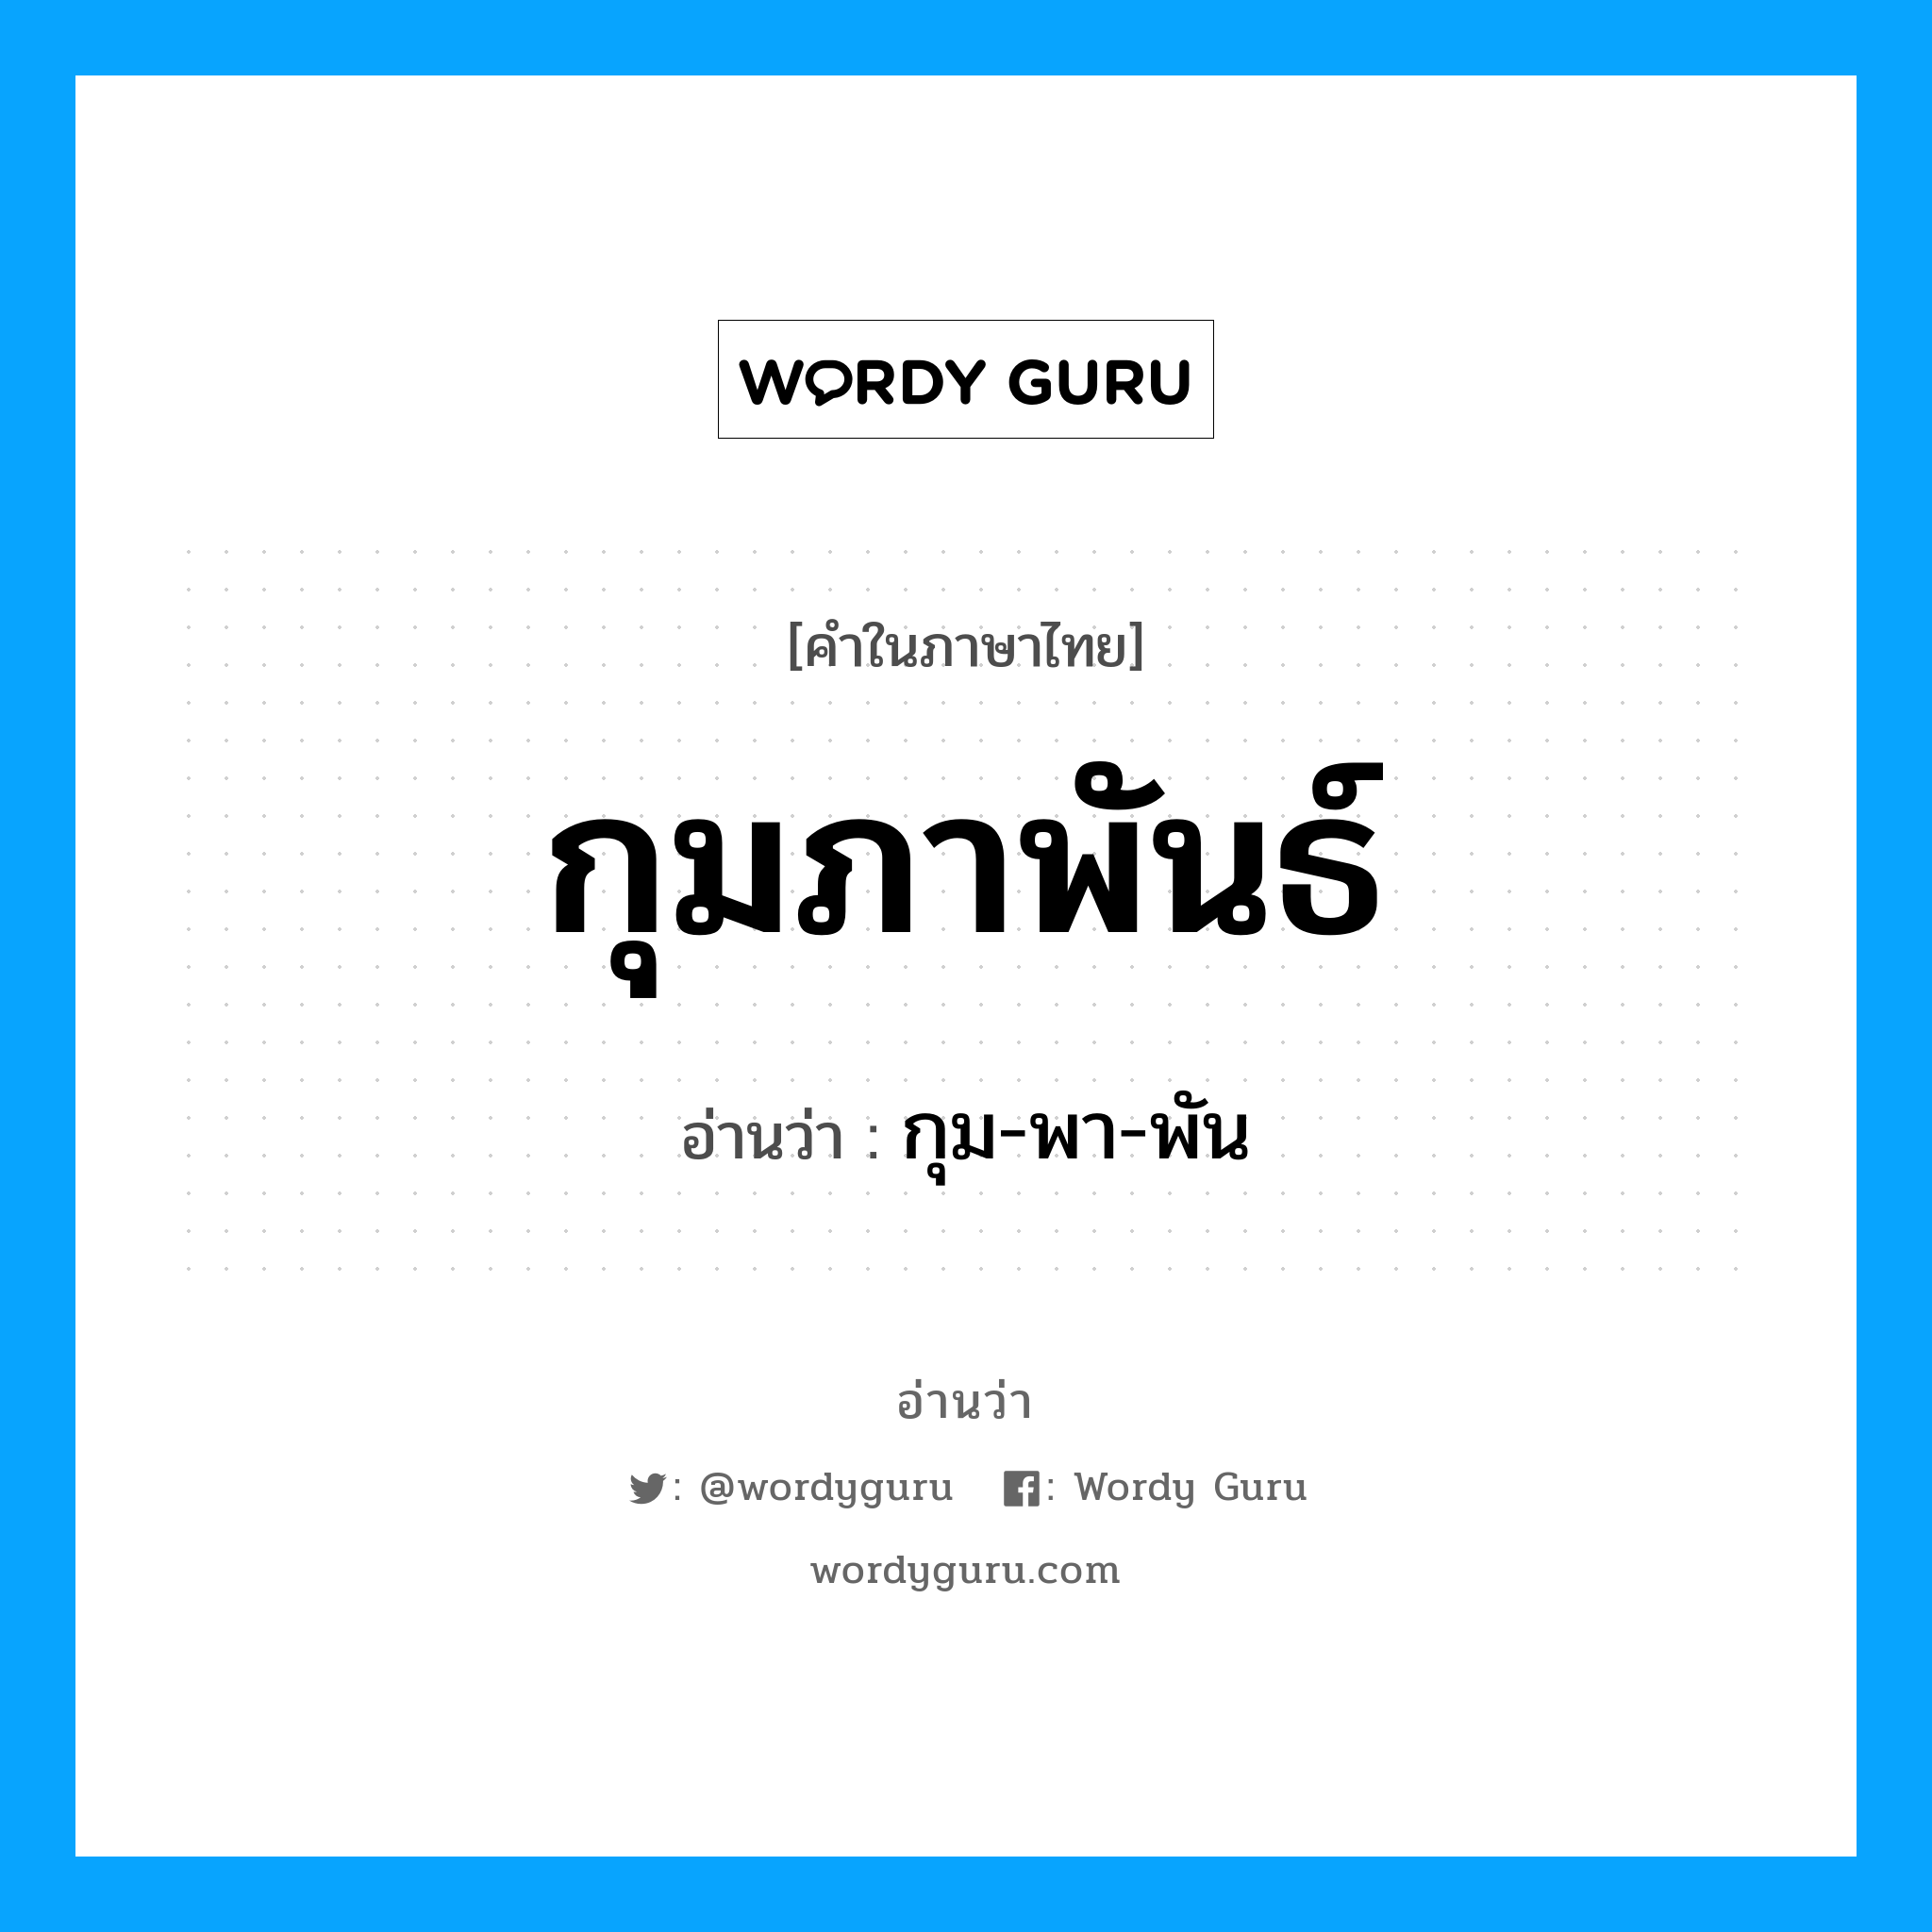 กุม-พา-พัน เป็นคำอ่านของคำไหน?, คำในภาษาไทย กุม-พา-พัน อ่านว่า กุมภาพันธ์ หมวด เดือน หมวด เดือน